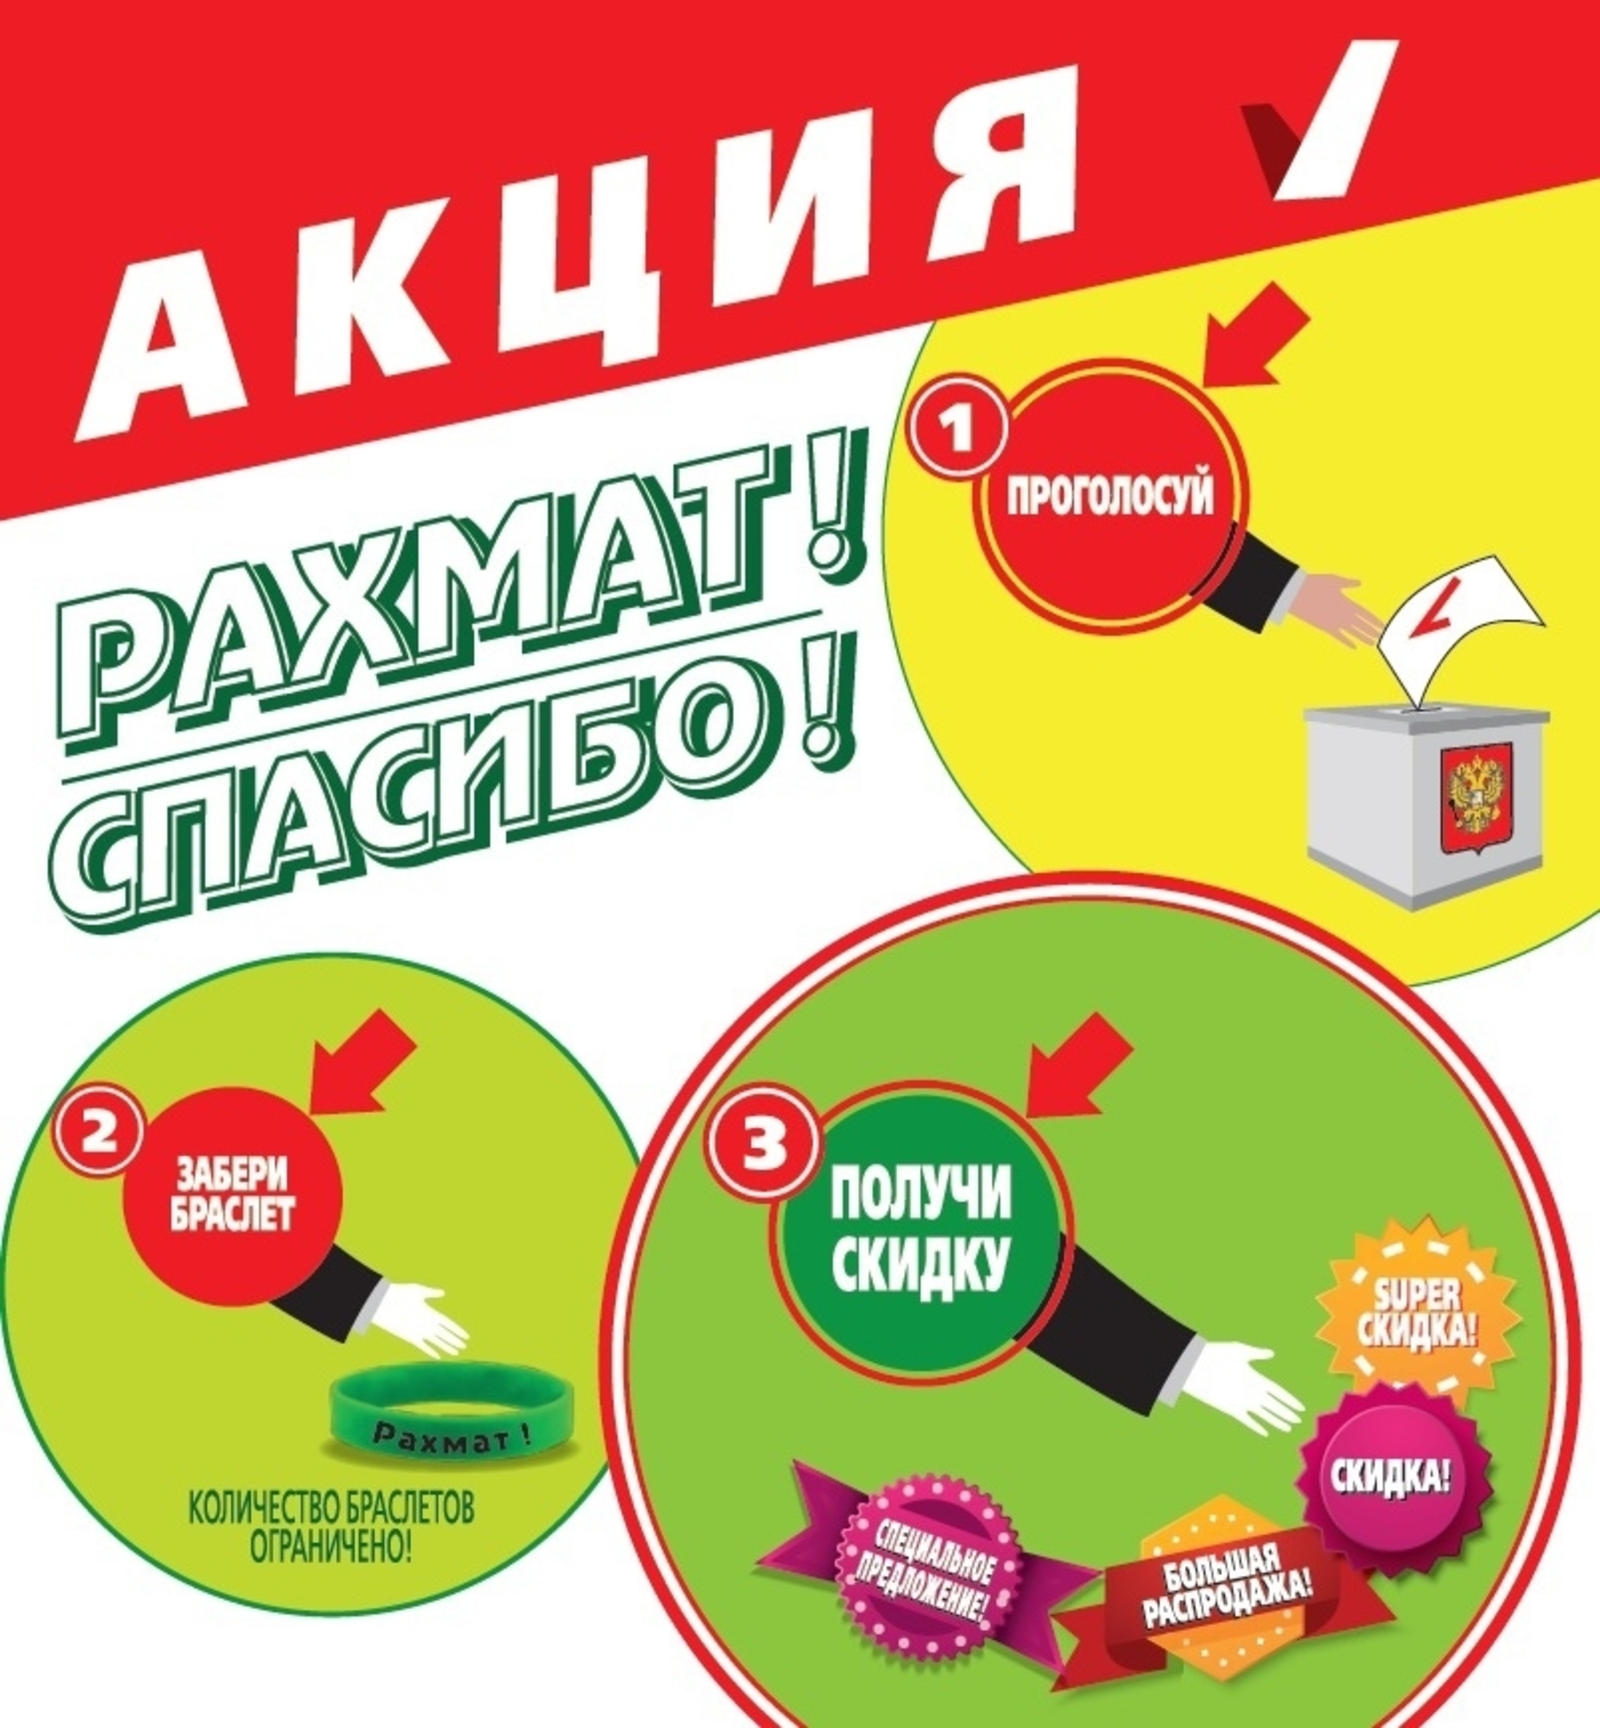 В Башкирии партнеры акции «Рахмат» подарят скидку каждому проголосовавшему